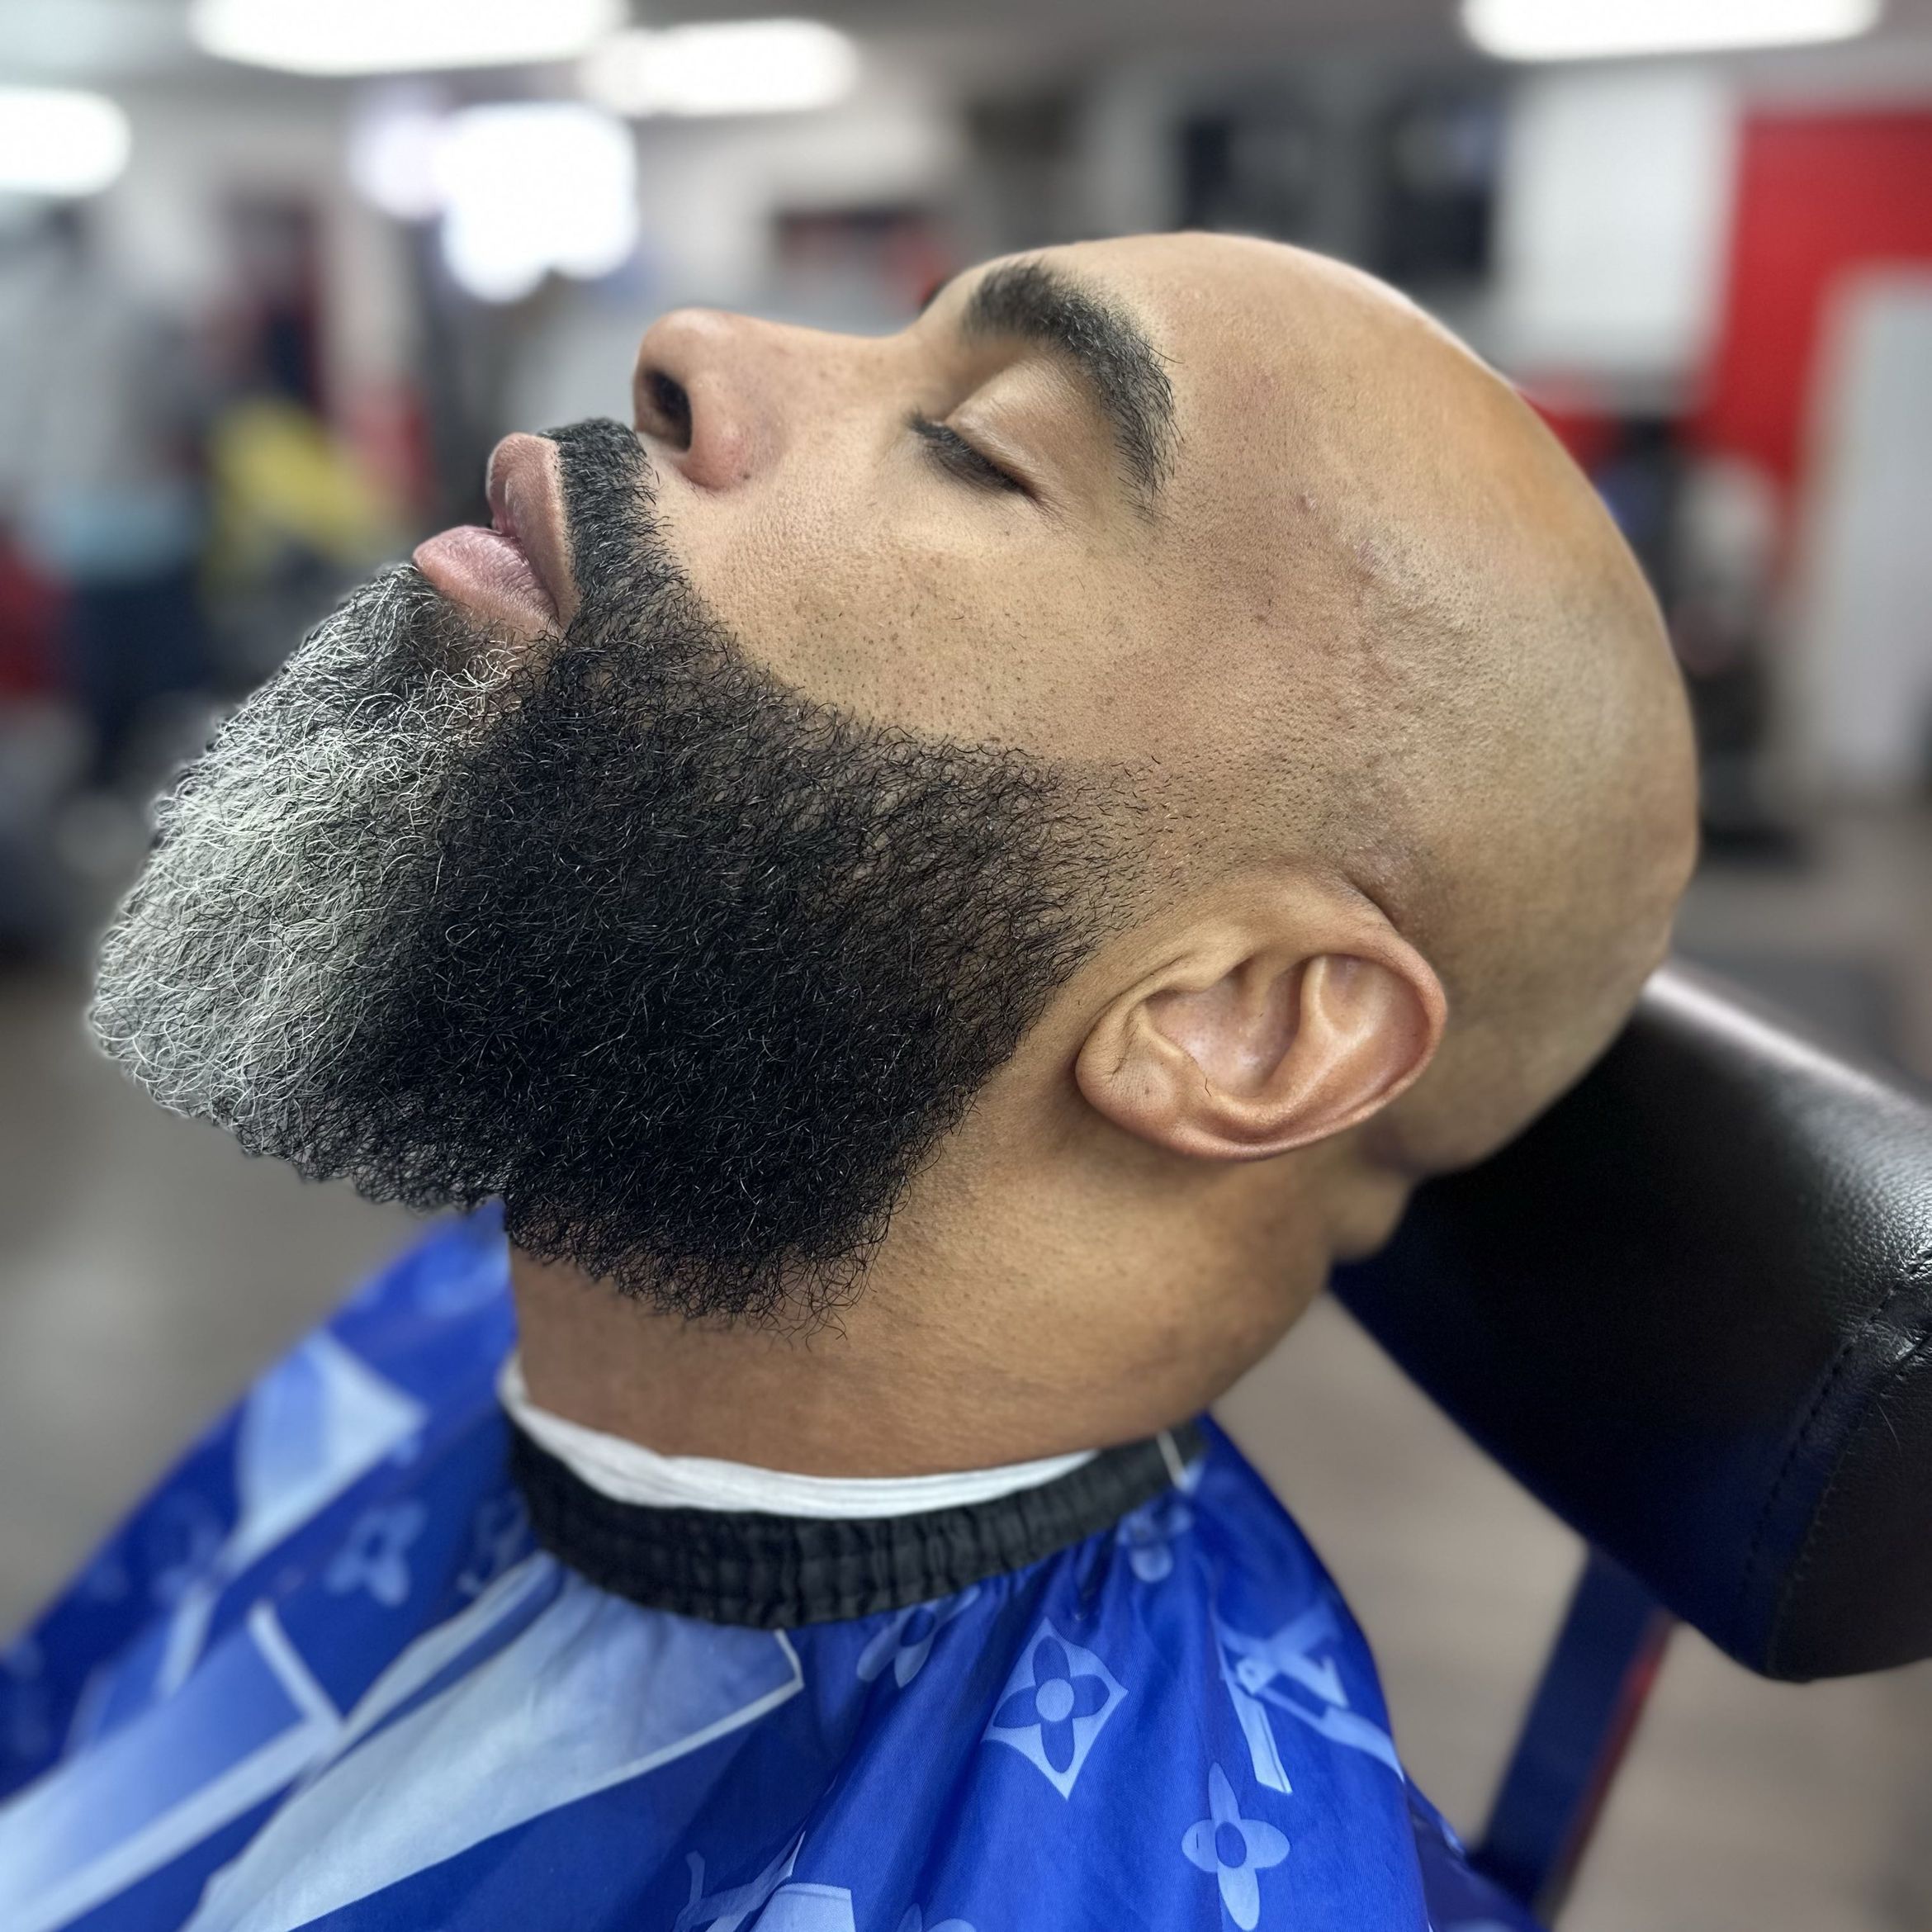 Beard Grooming portfolio